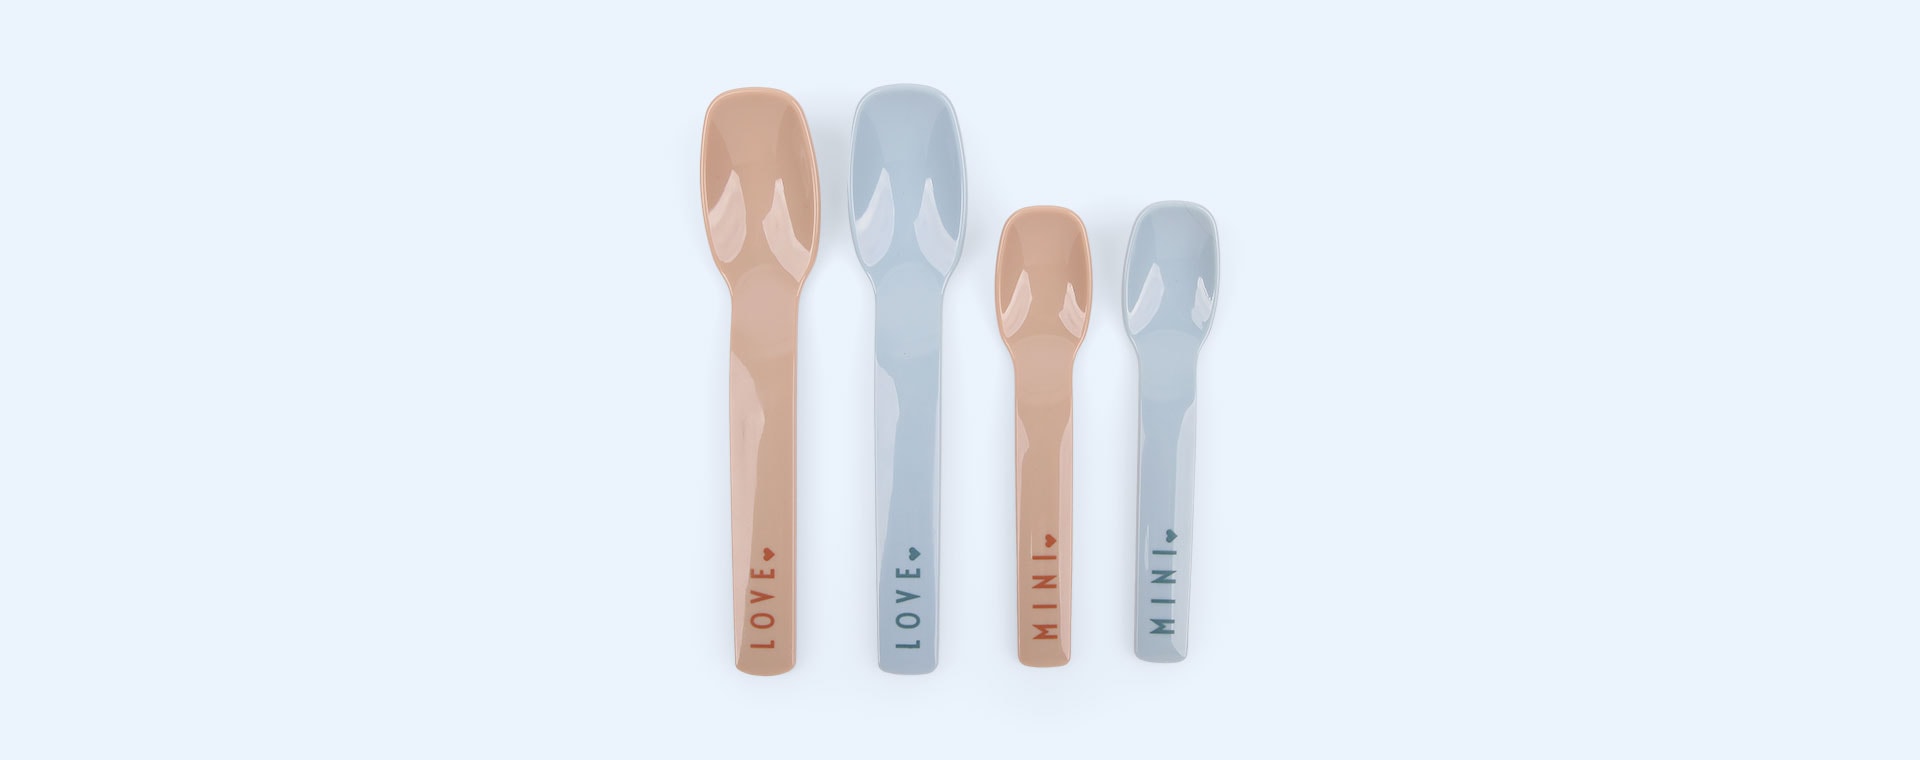 Light Blue / Beige Design Letters Mini Favourite Spoon Set